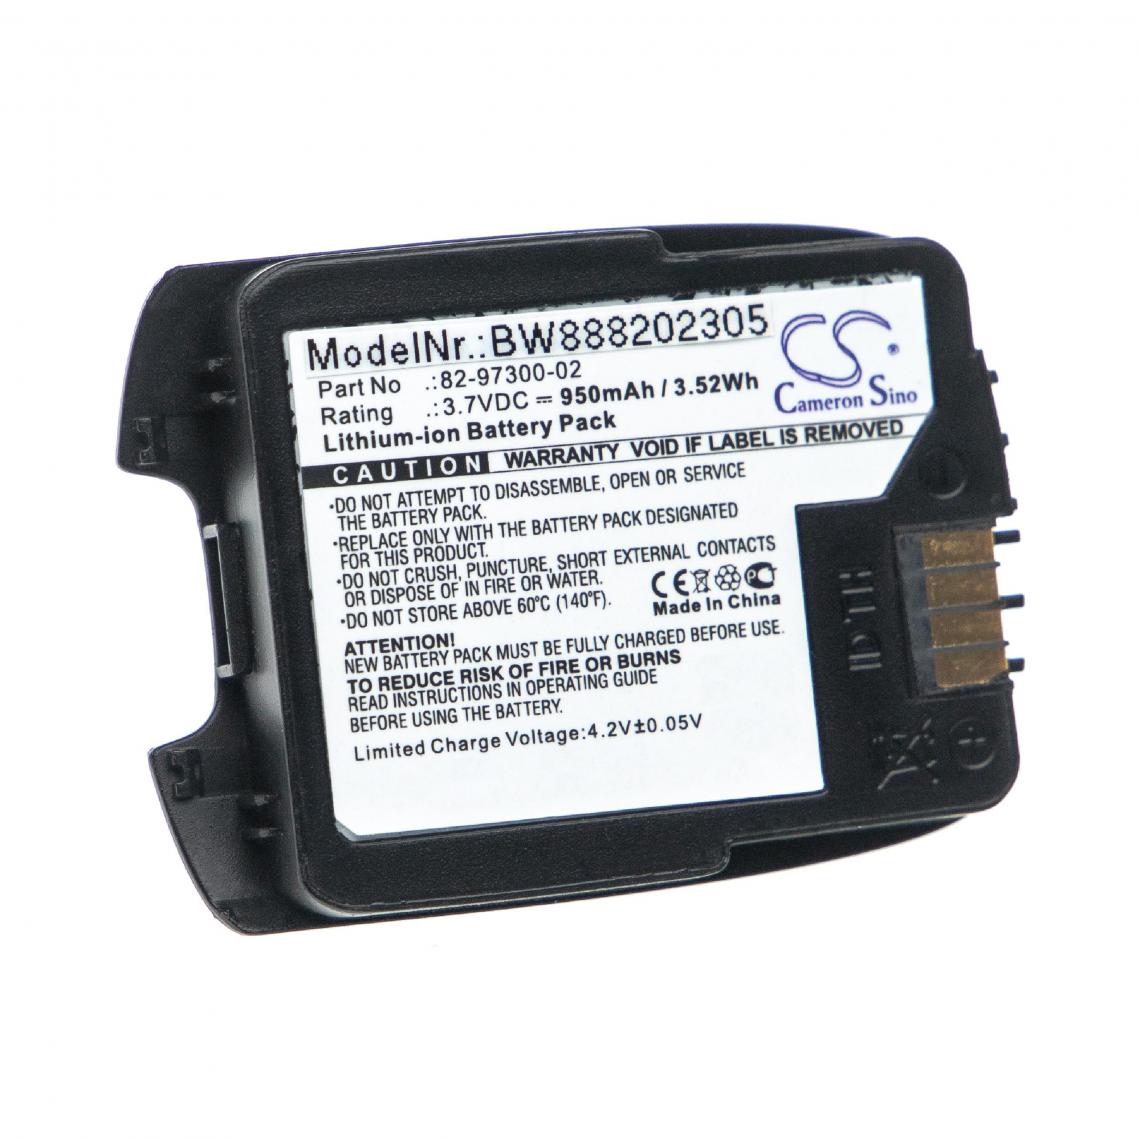 Vhbw - vhbw Batterie remplacement pour Motorola 82-97300-02, BTRY-CS40EAB00-04 pour scanner de code-barre POS (950mAh, 3,7V, Li-ion) - Caméras Sportives